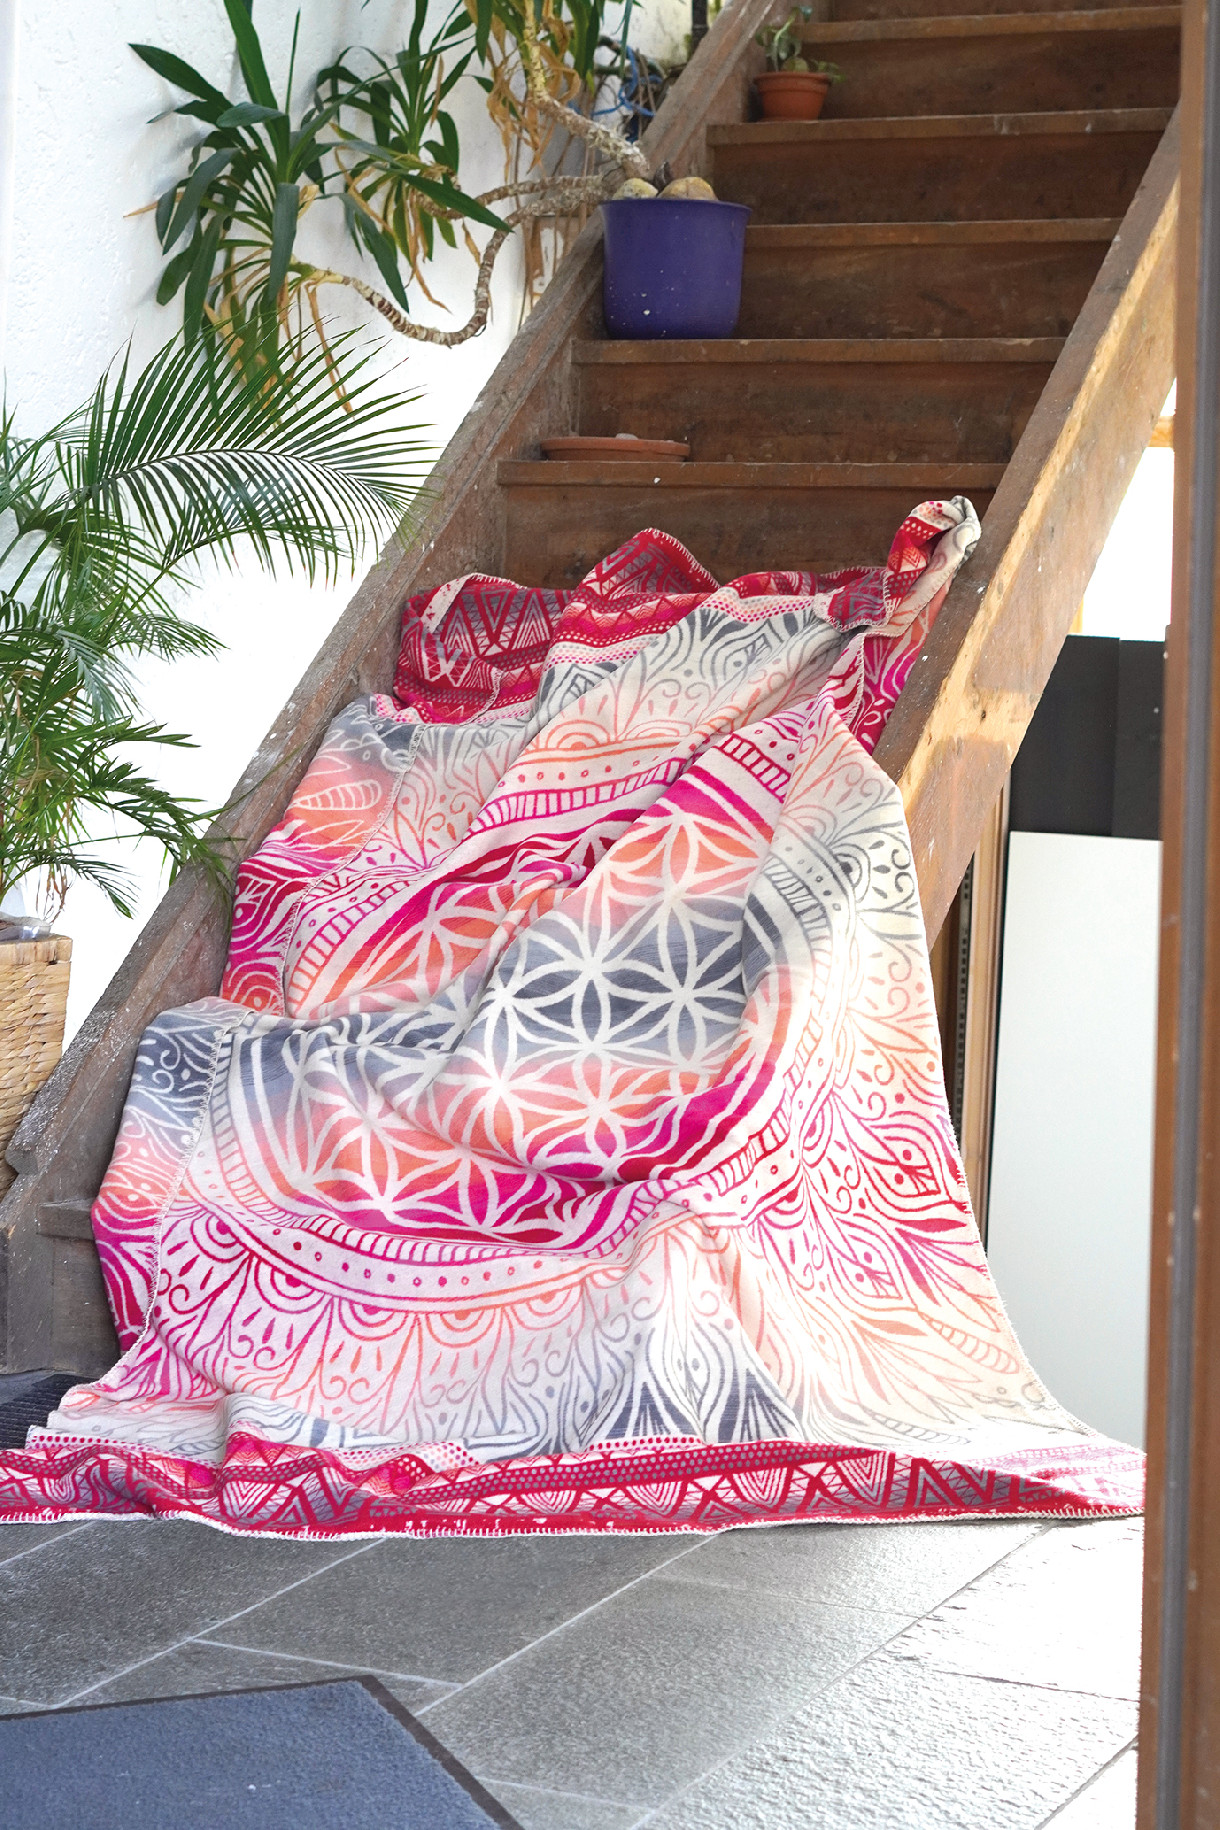 The Spirit of OM deka z bio bavlny - růžovo-šedá - ornament květ života - 140x200 cm